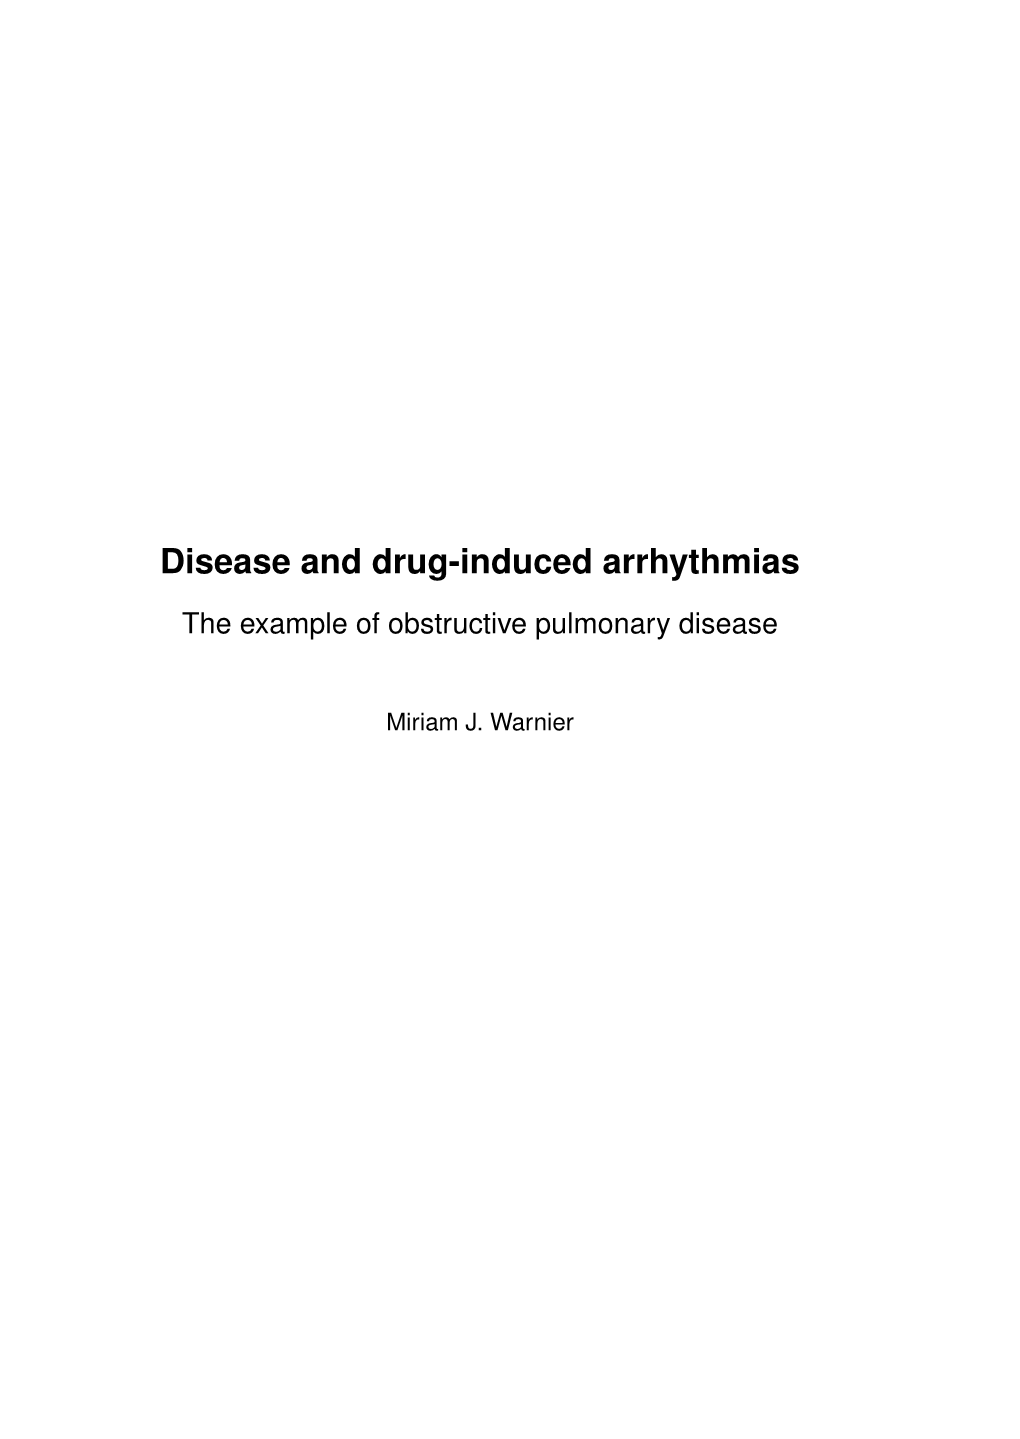 Disease and Drug-Induced Arrhythmias